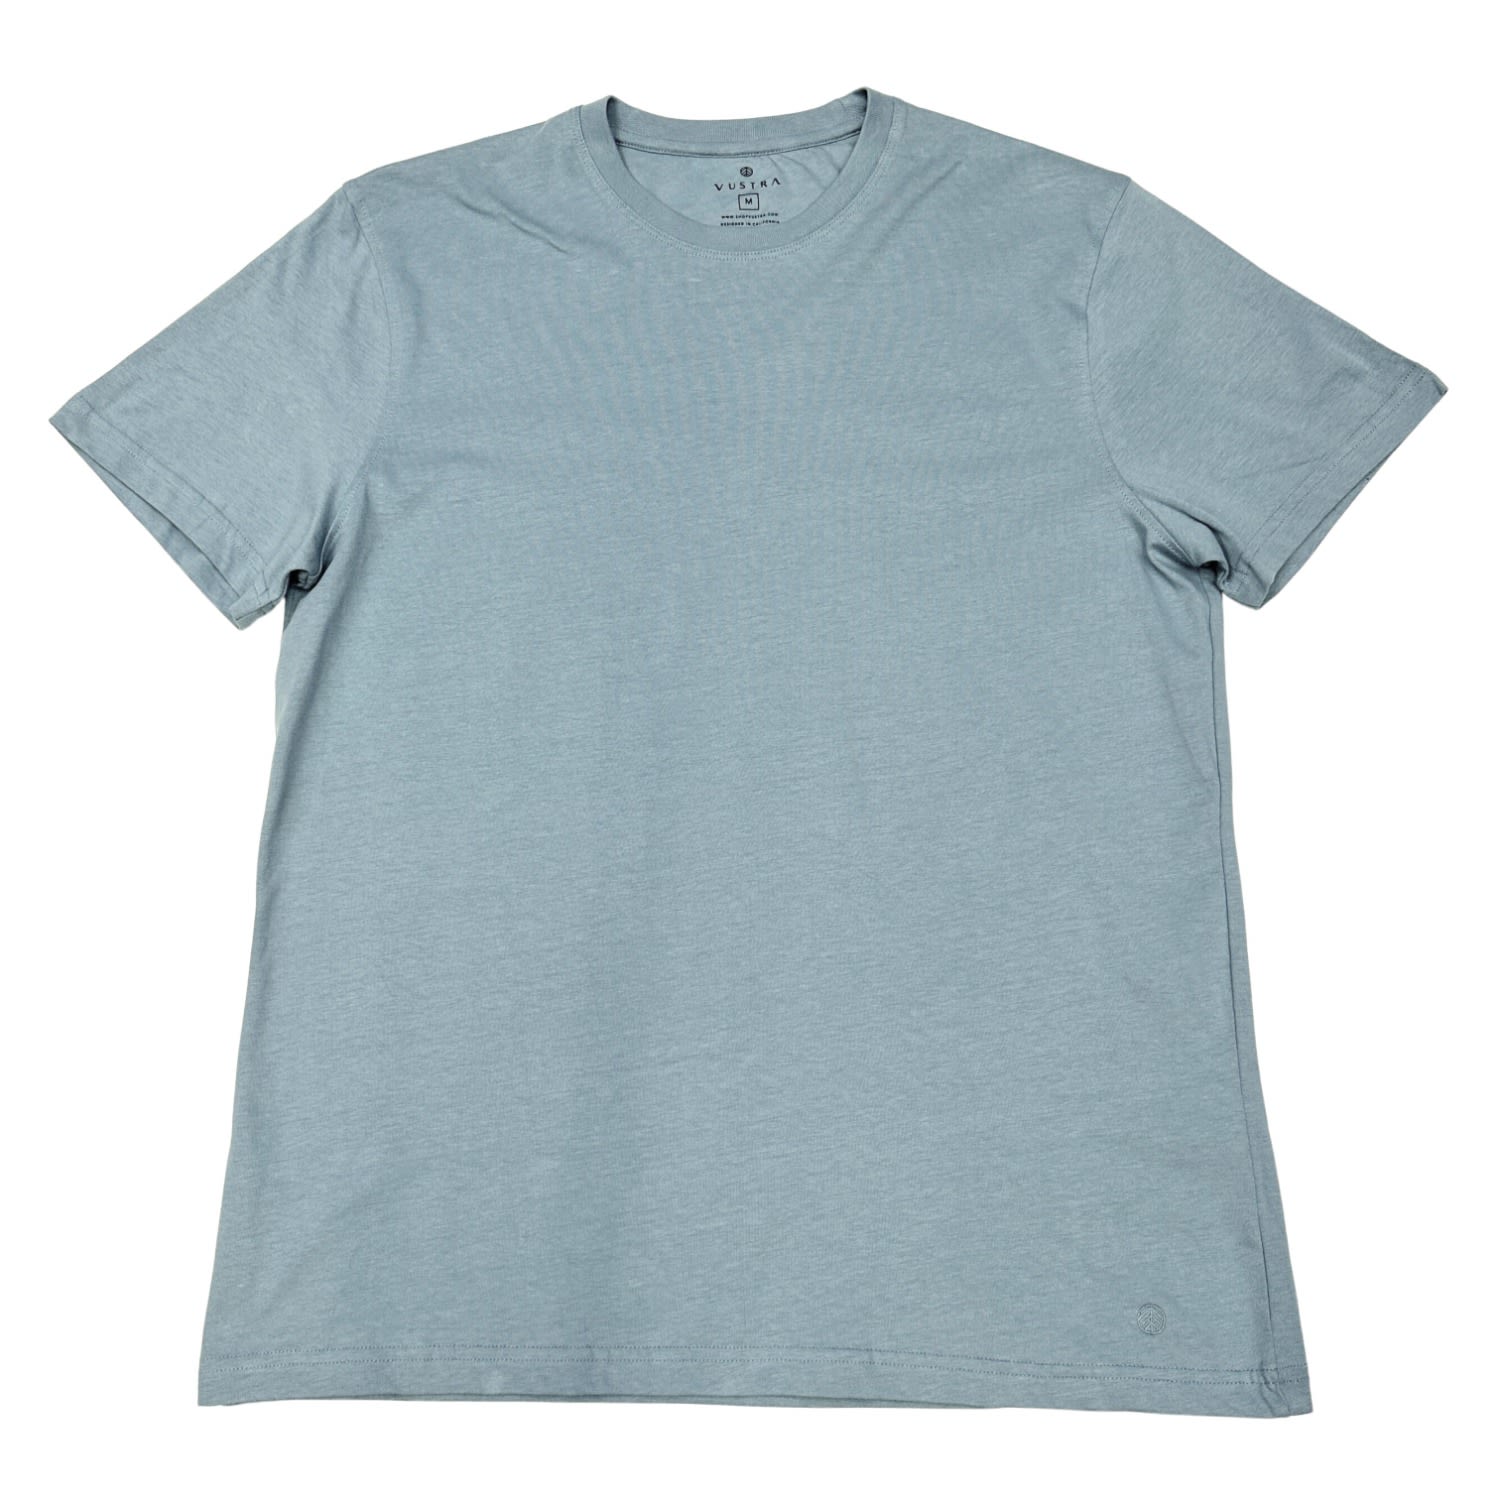 Vustra Men's Neutrals / Blue / Grey Blue Shadow Short Sleeve T-shirt